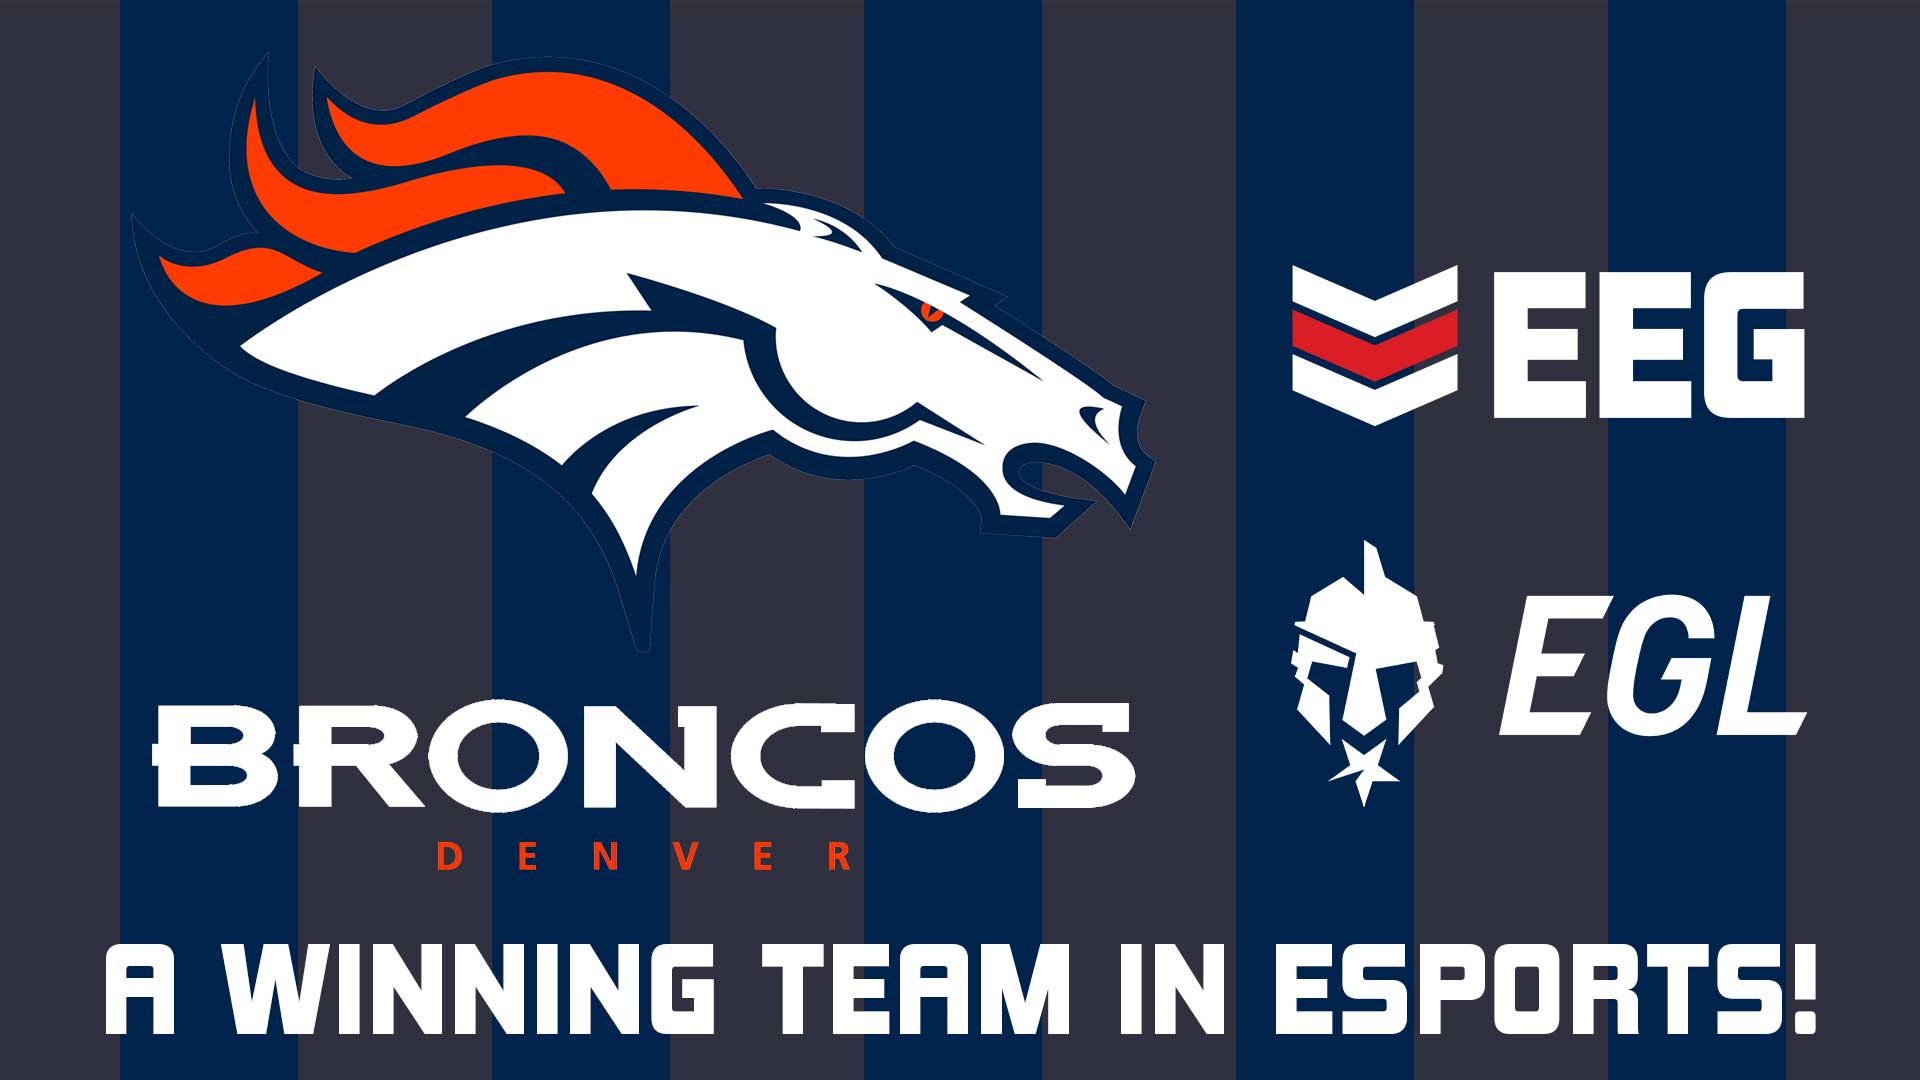 Broncos Esports Entertainment Group